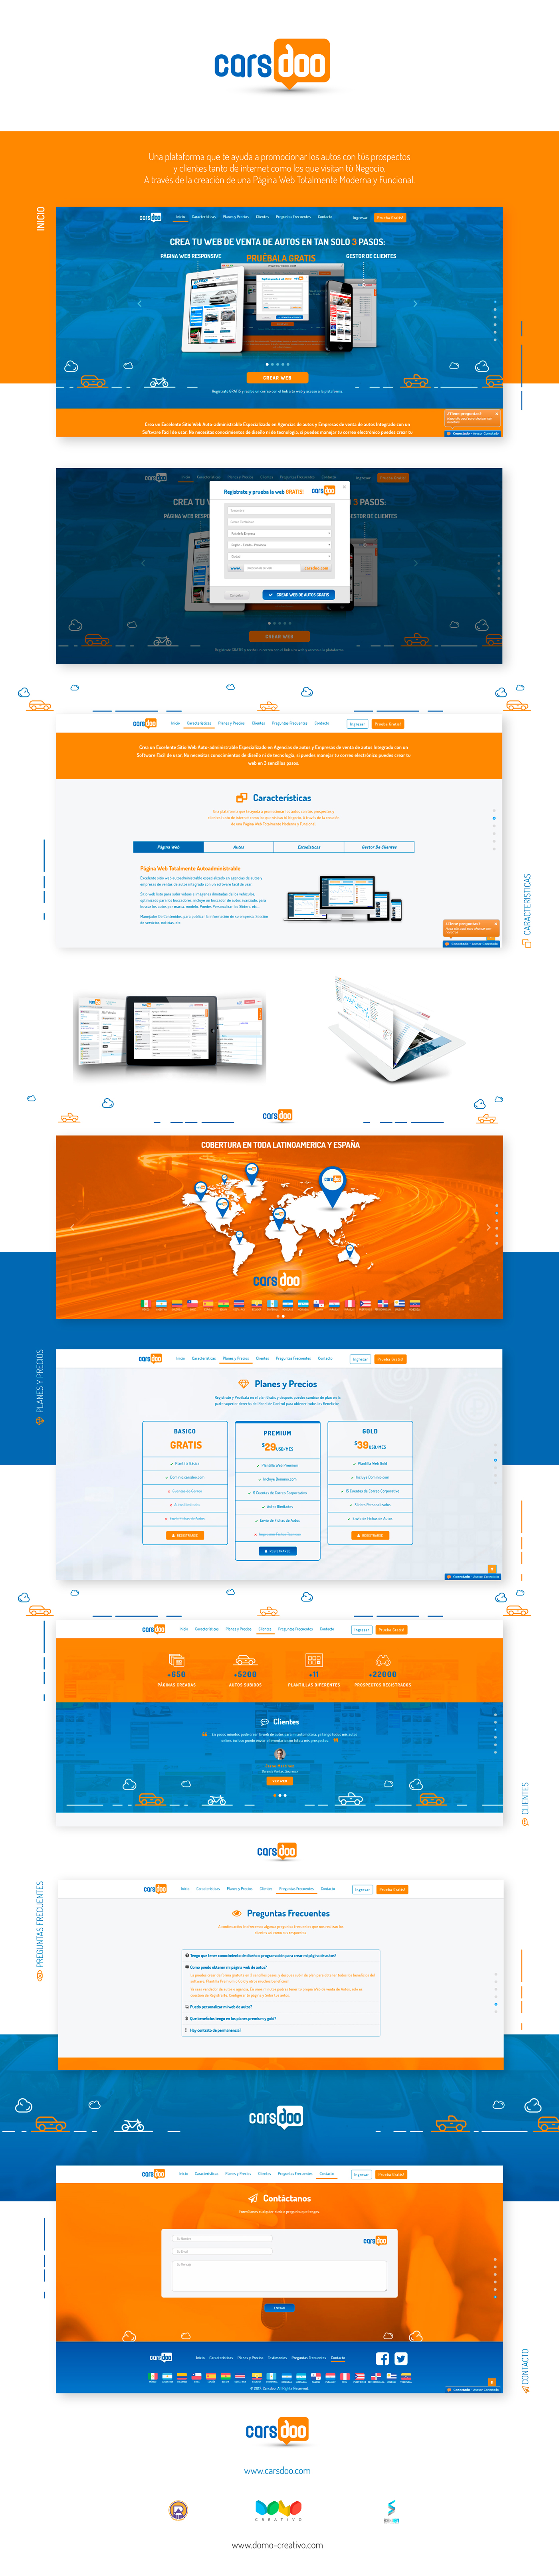 Web ux UI diseño interactivo diseño gráfico Web Design  carsdoo.com branding  marca roko arraez